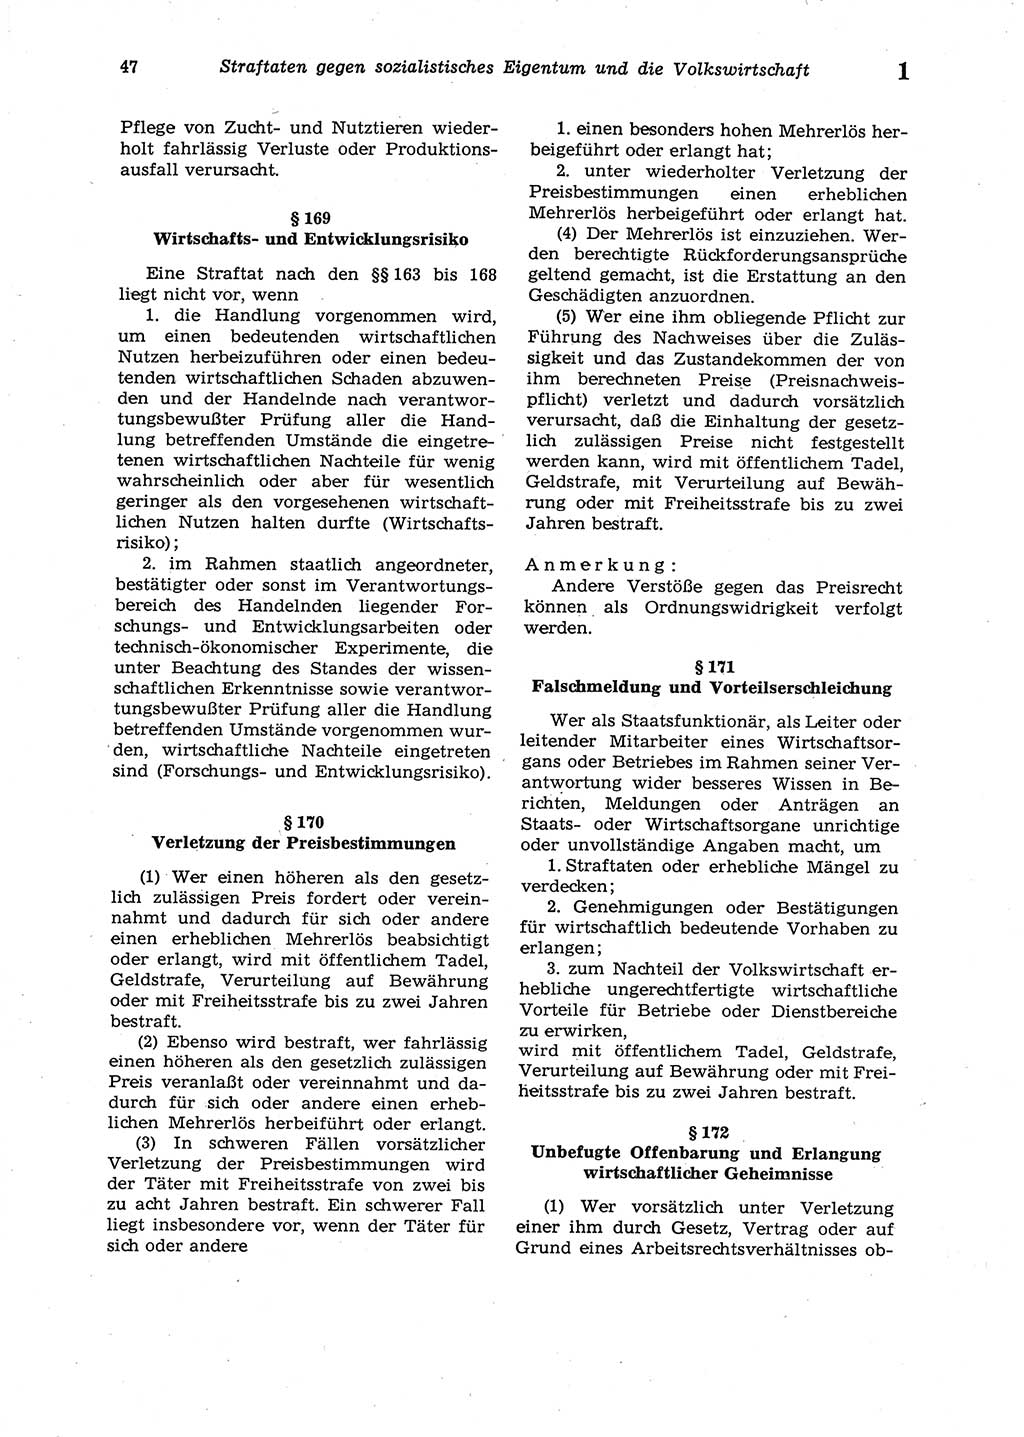 Strafgesetzbuch (StGB) der Deutschen Demokratischen Republik (DDR) 1987, Seite 47 (StGB DDR 1987, S. 47)